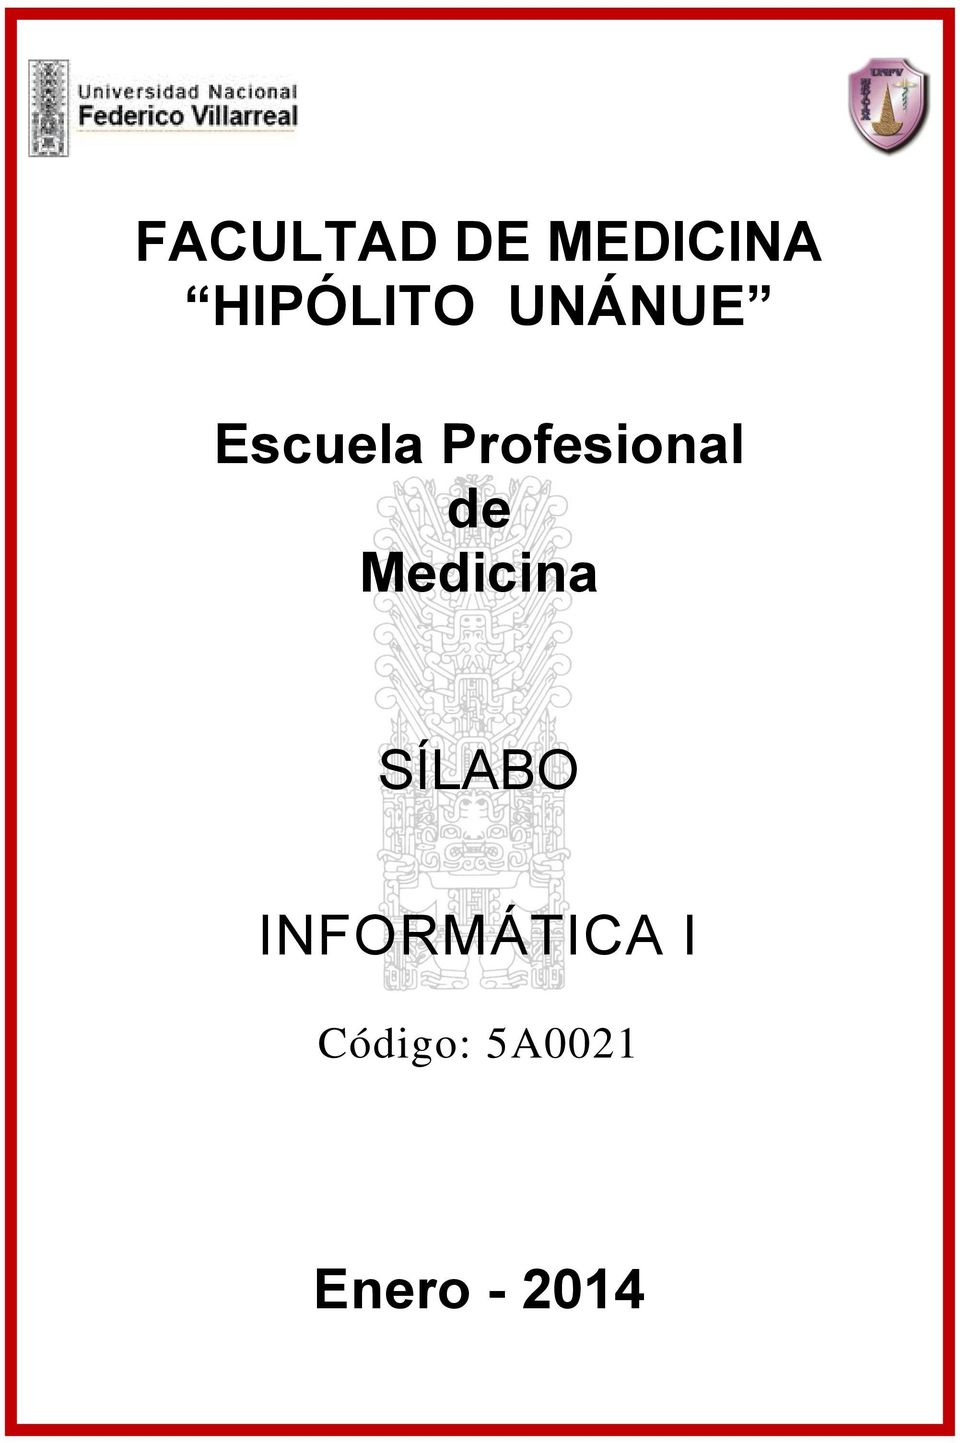 Profesional de Medicina